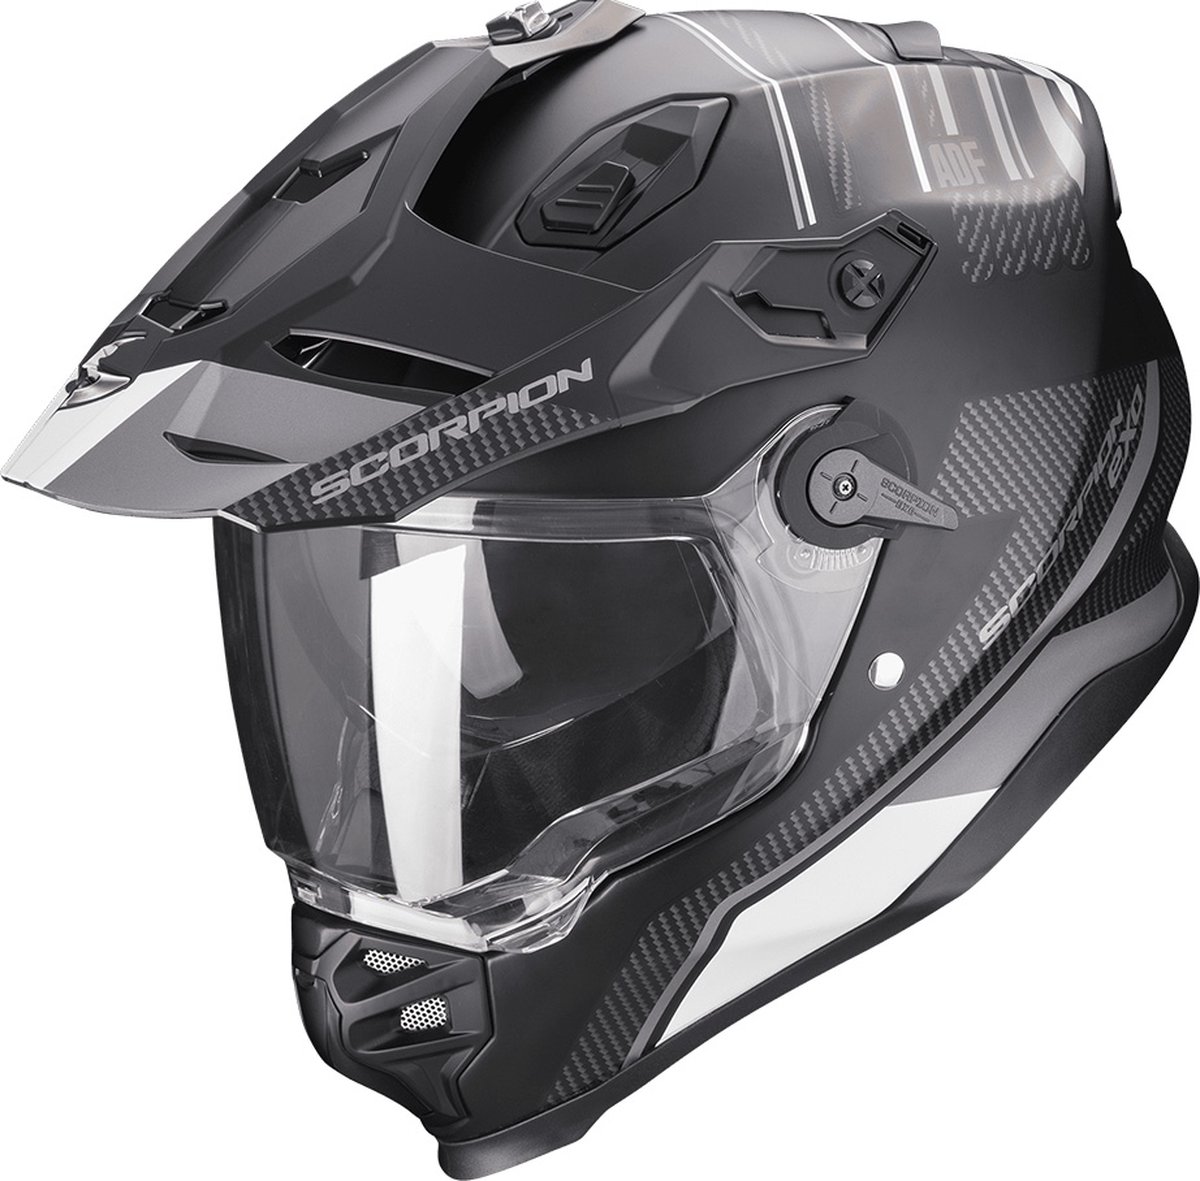 Scorpion Adf-9000 Air Desert Matt Black-Silver XL - Maat XL - Helm